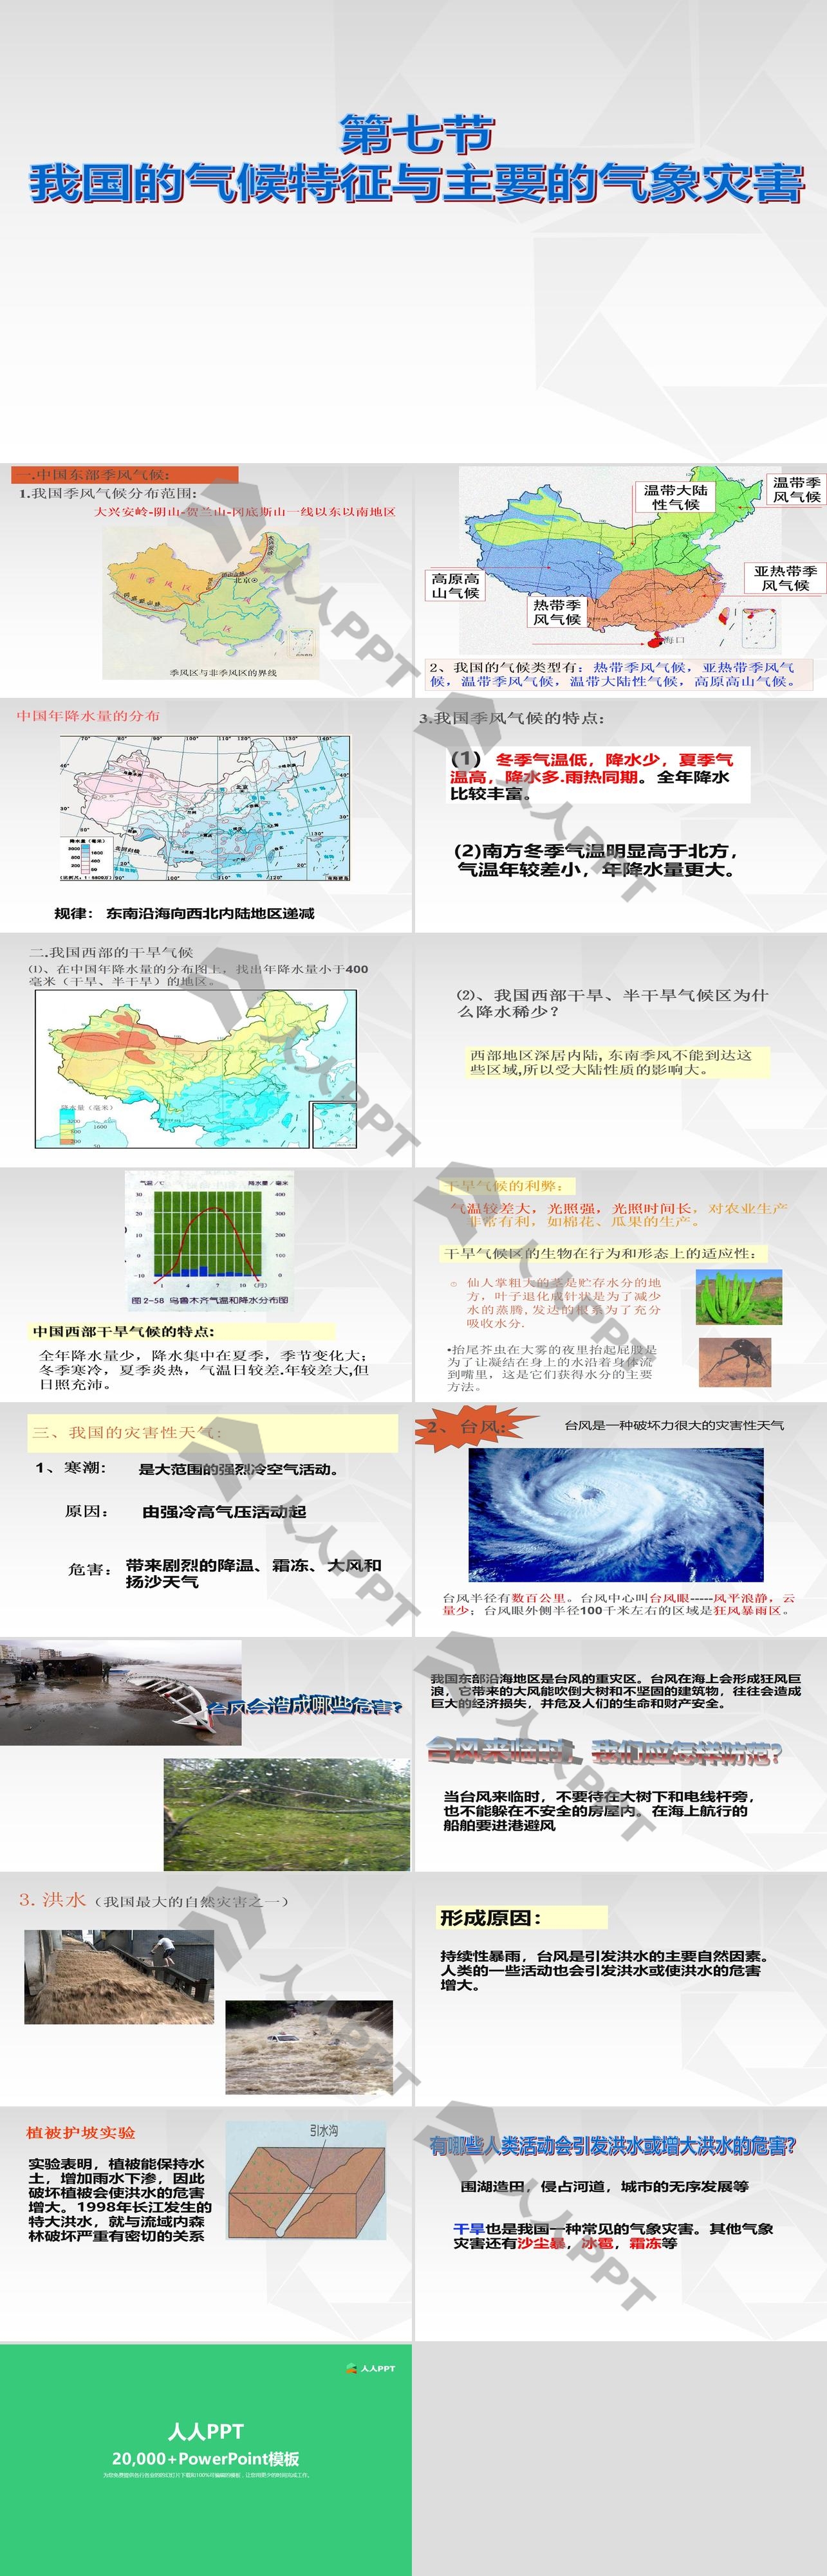 《我国的气候特征与主要气象灾害》PPT长图